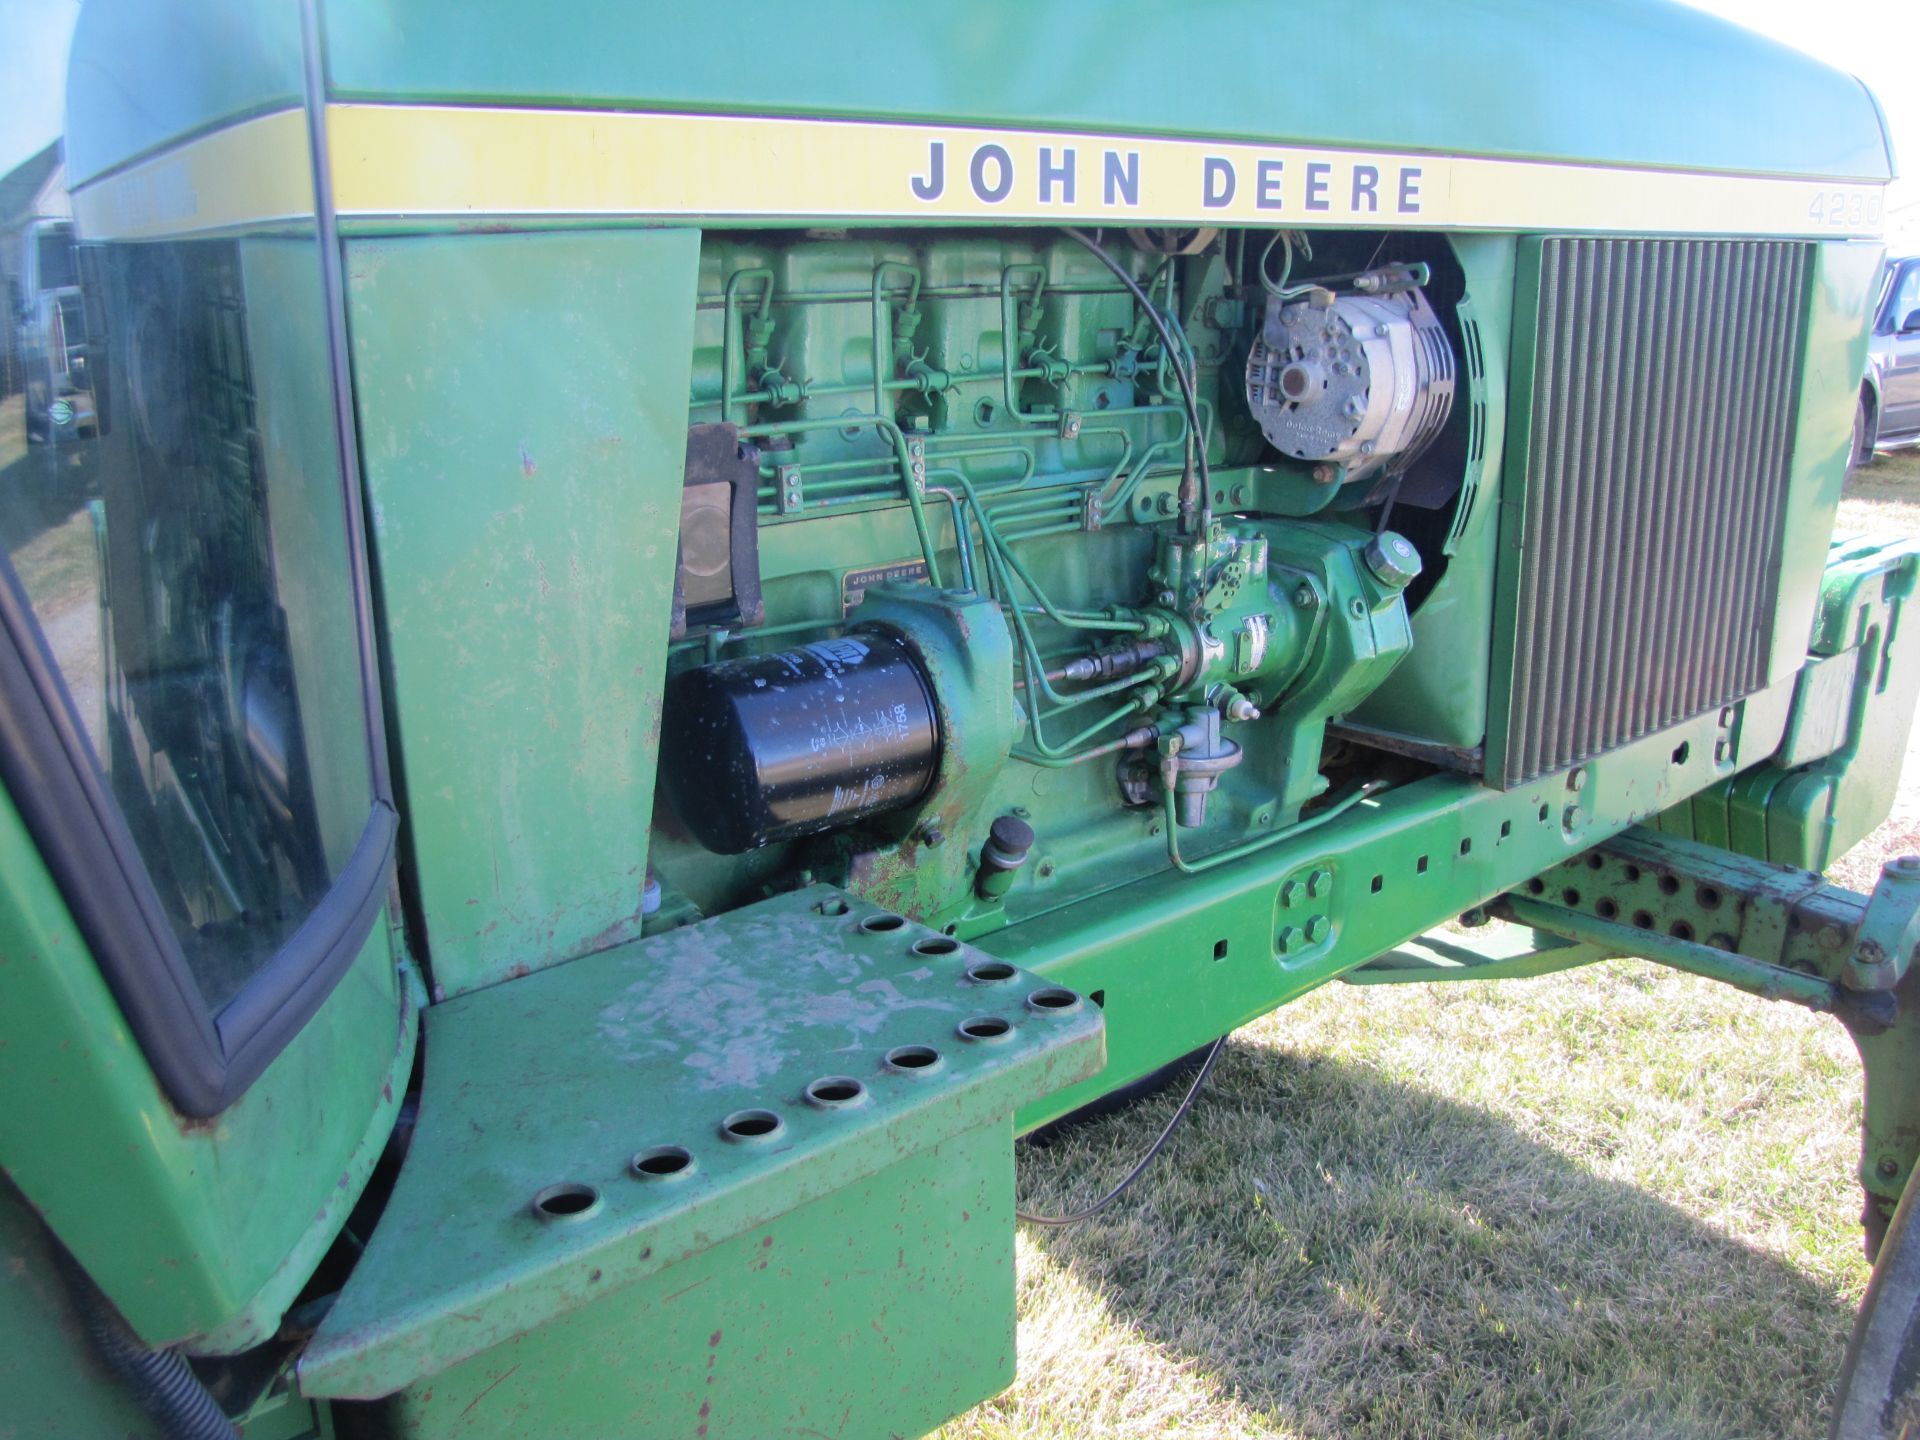 John Deere 4230 tractor - Image 34 of 49